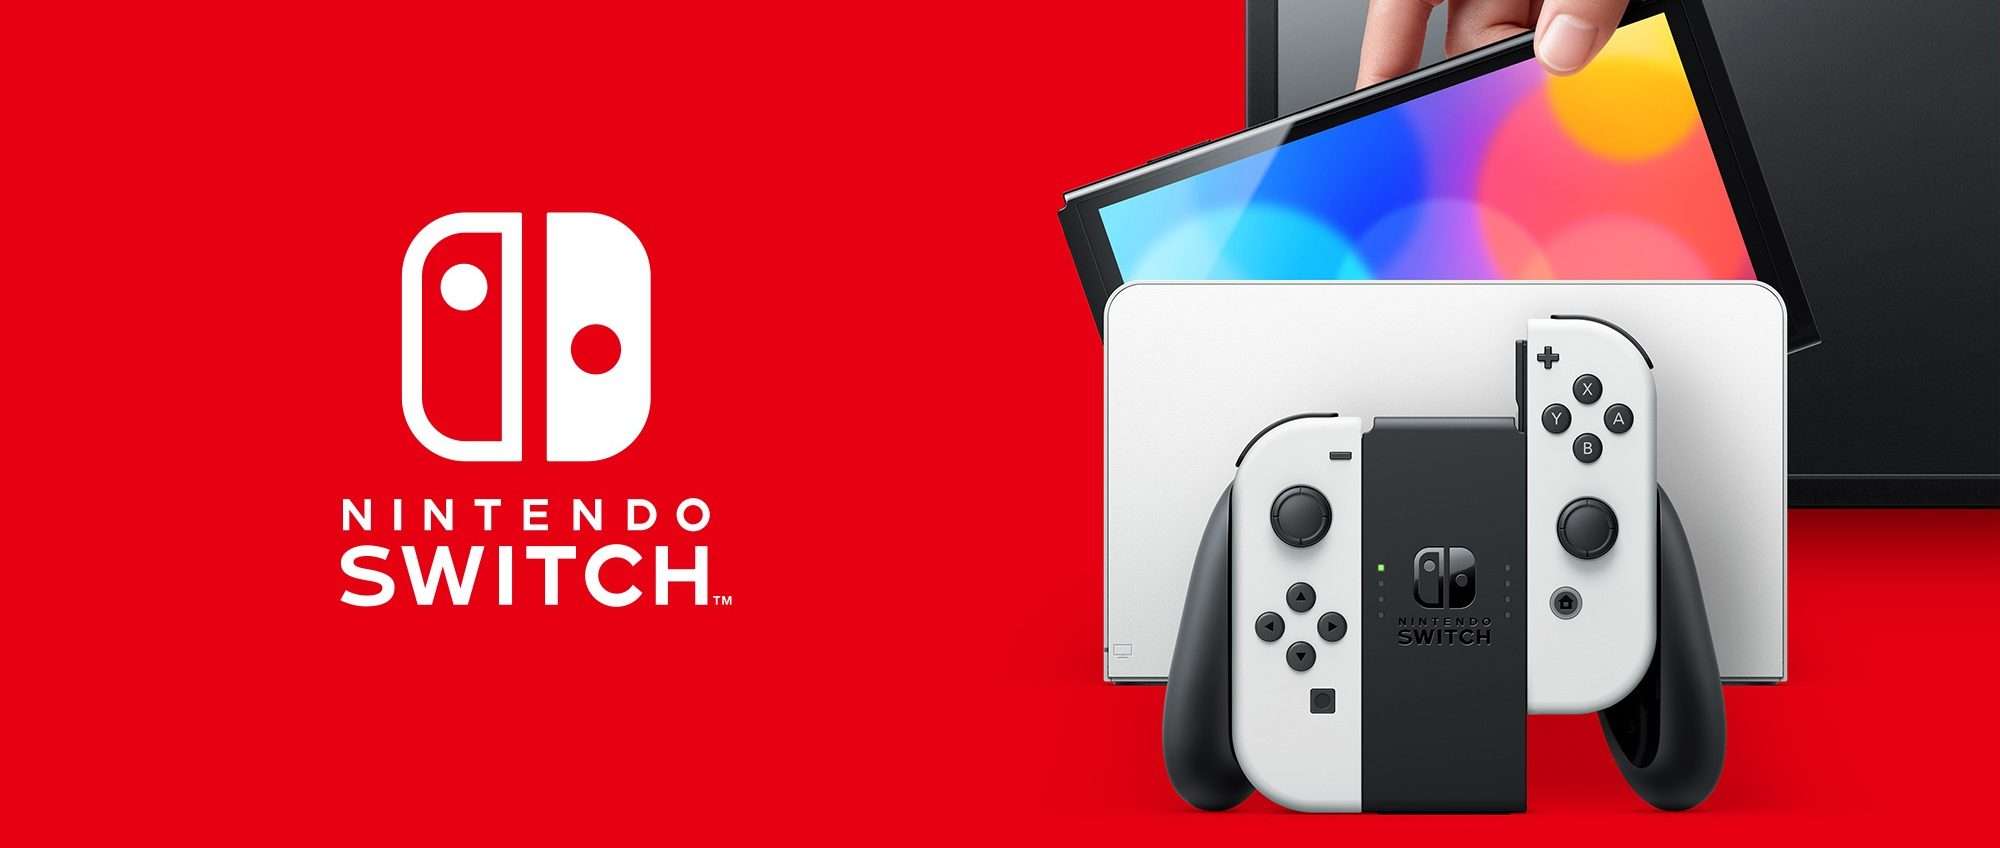 Nintendo Switch OLED in offerta a QUESTO PREZZO è un VERO AFFARE